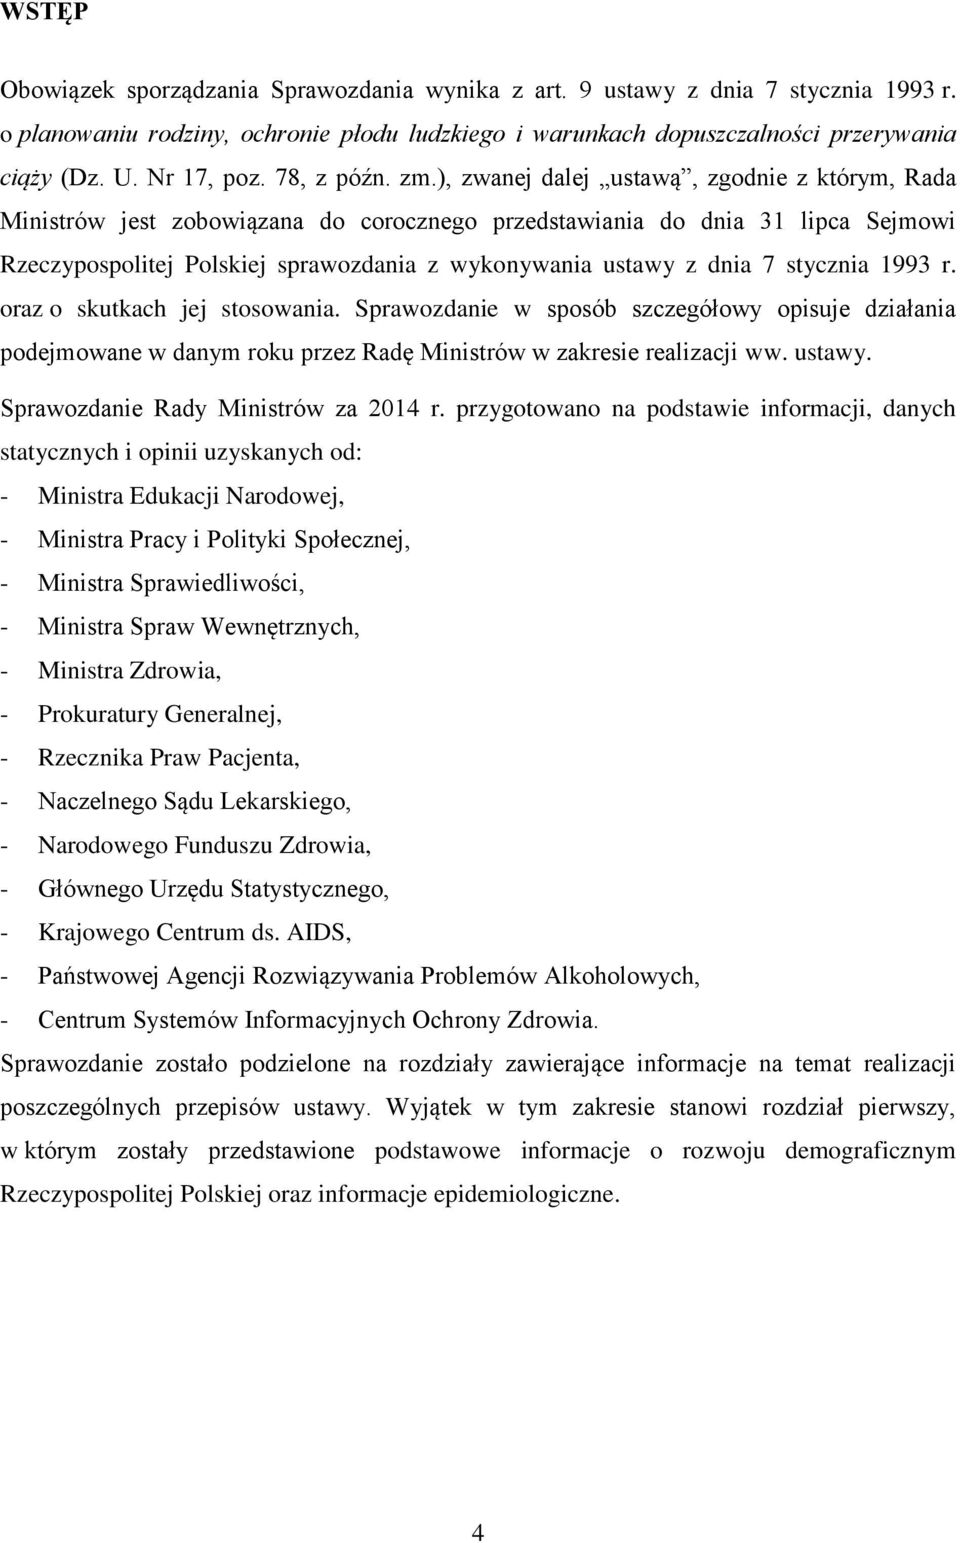 ), zwanej dalej ustawą, zgodnie z którym, Rada Ministrów jest zobowiązana do corocznego przedstawiania do dnia 31 lipca Sejmowi Rzeczypospolitej Polskiej sprawozdania z wykonywania ustawy z dnia 7